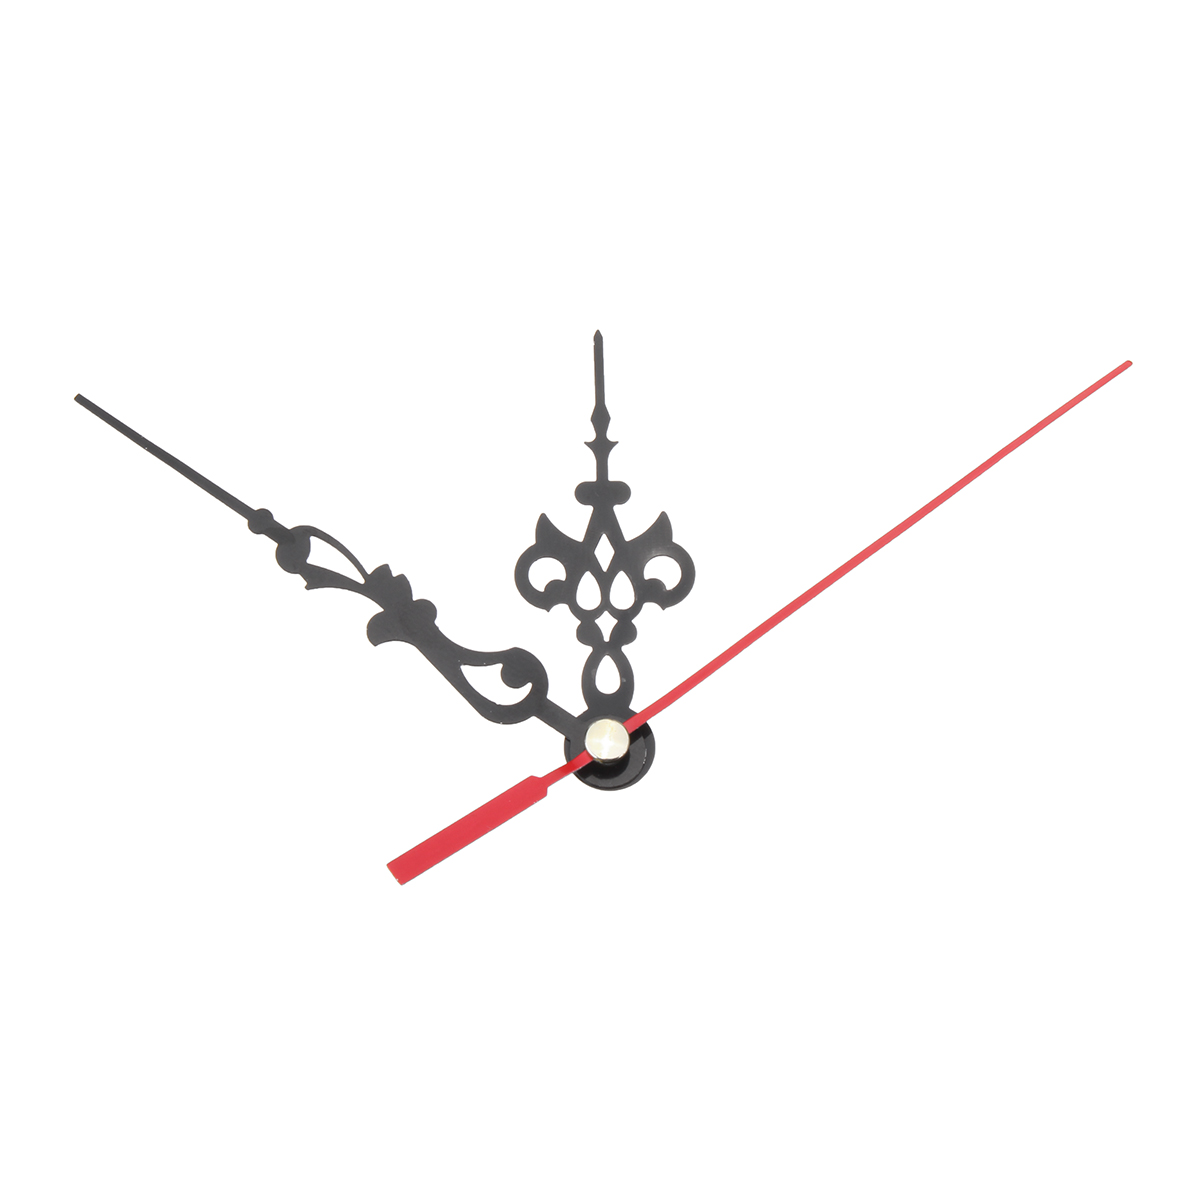 DIY-Replacement-Quartz-Clock-Movement-Hands-Mute-Mechanism-Repair-Kit-1288008